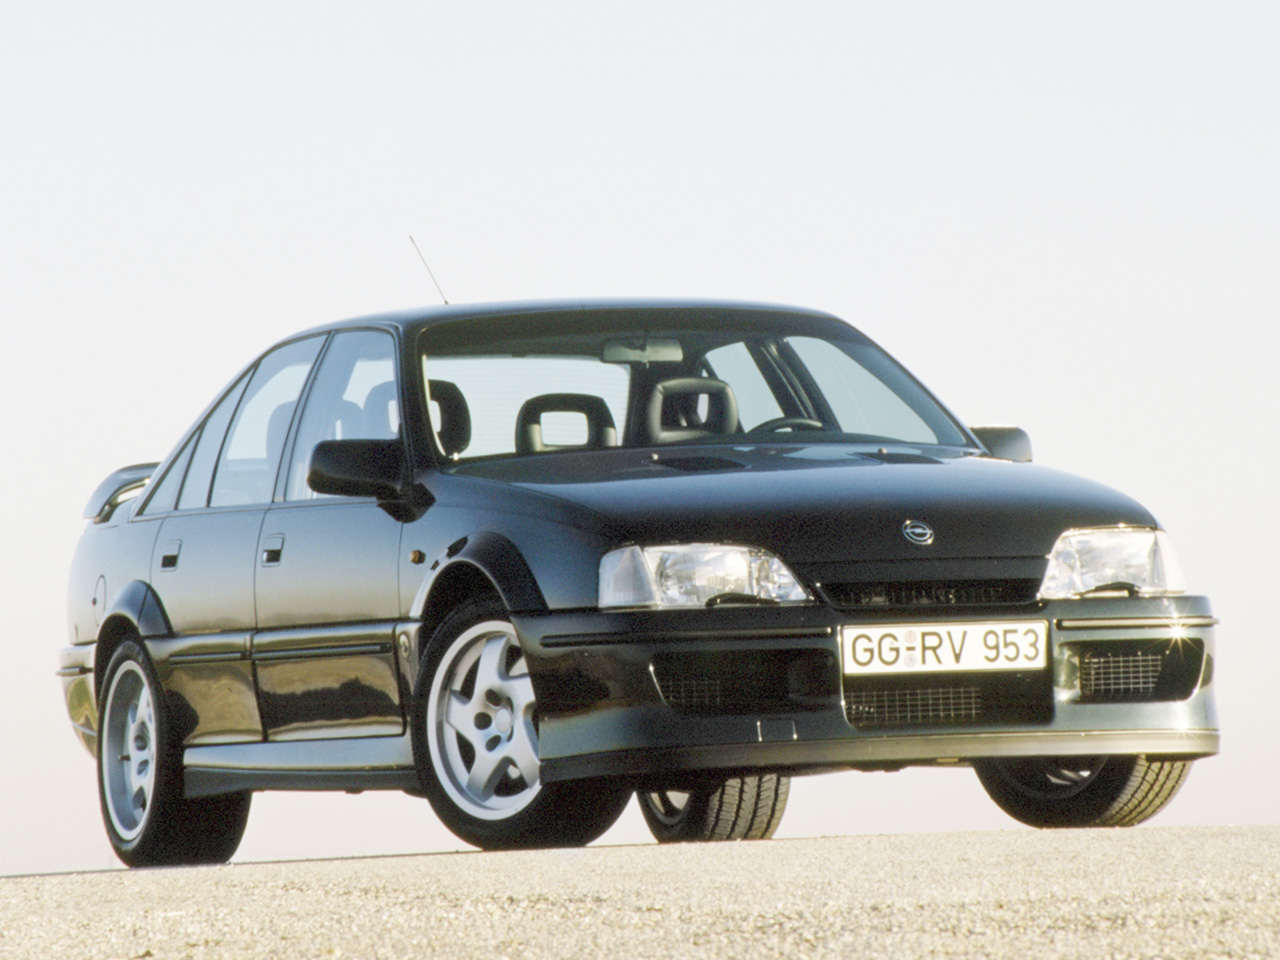 Kultautos der 1990er: Die 10 kultigsten Autos der 90er Jahre